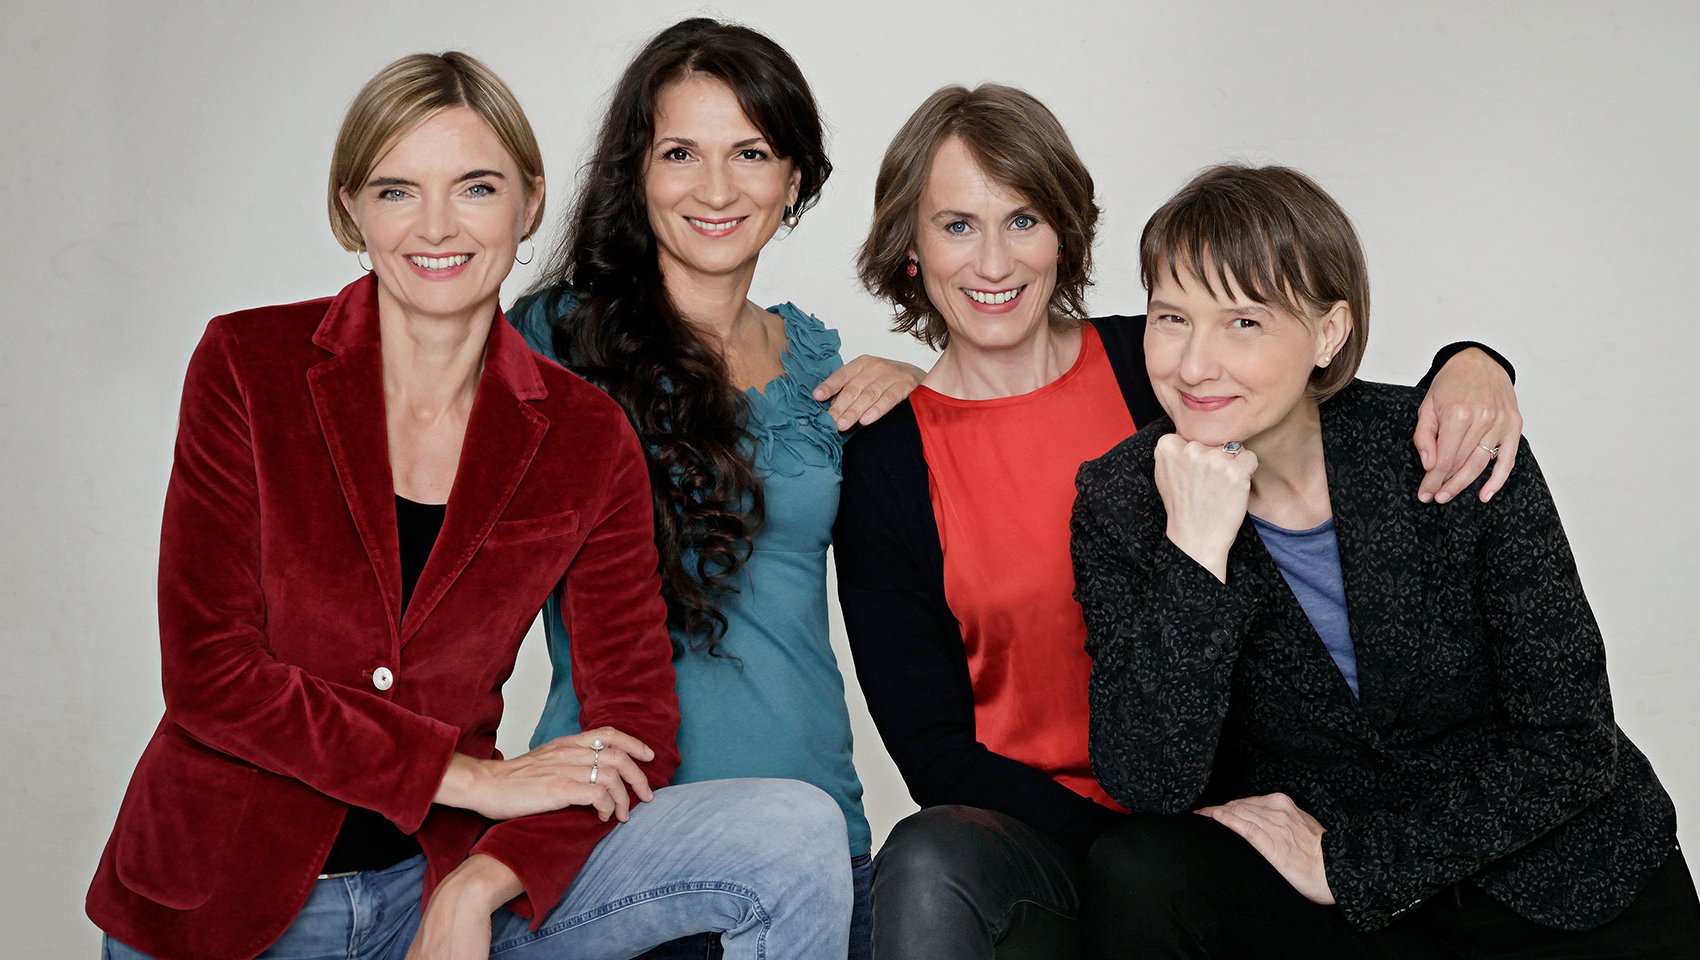 4 members of the Klenke Quartett posing together